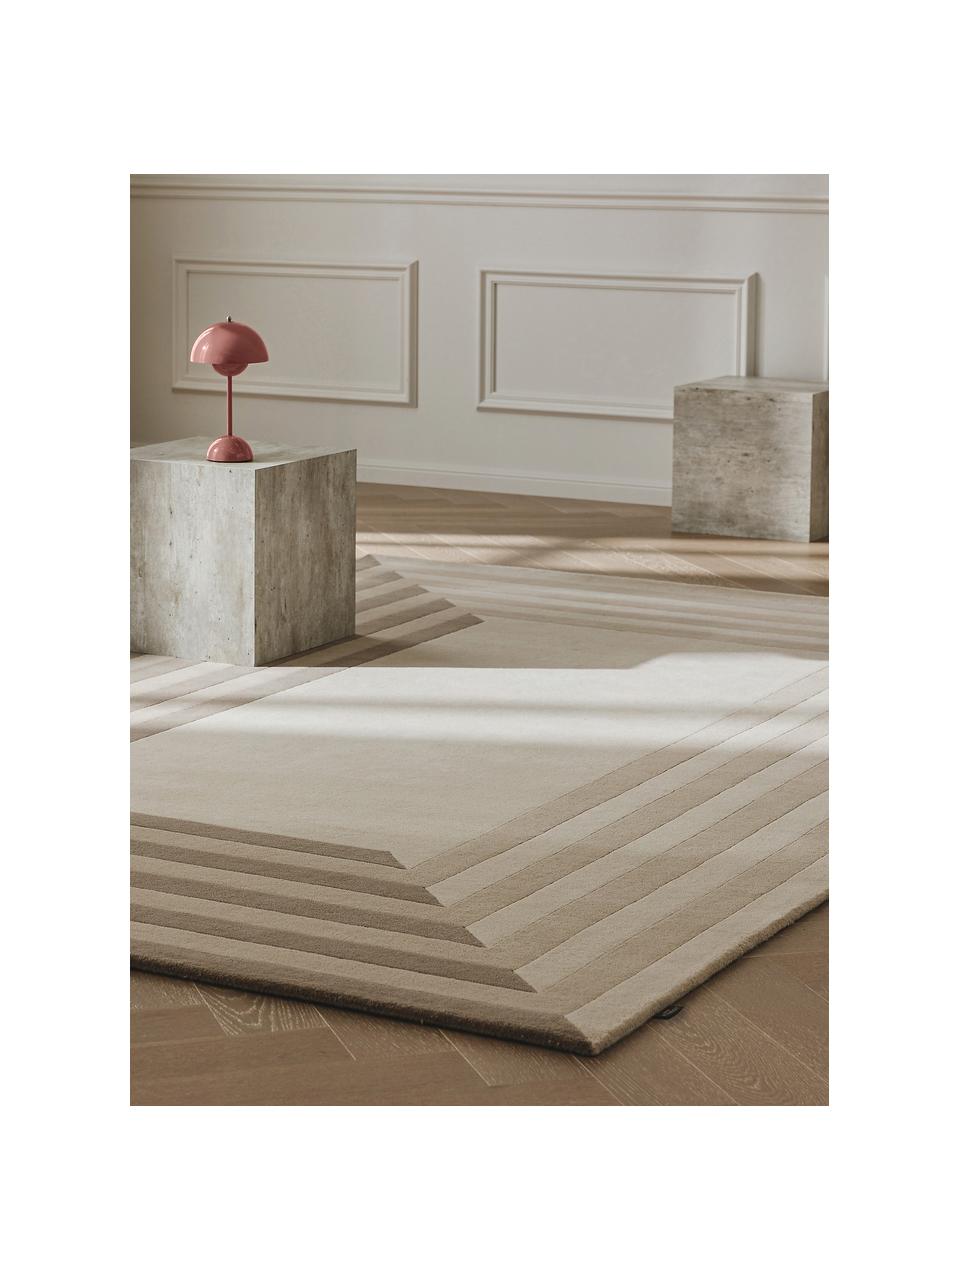 Ručne tuftovaný vlnený koberec Tilo, 100 % vlna

V prvých týždňoch používania môžu vlnené koberce uvoľňovať vlákna, tento jav zmizne po niekoľkých týždňoch používania, Béžová, Ø 160 x V 230 cm (veľkosť XL)